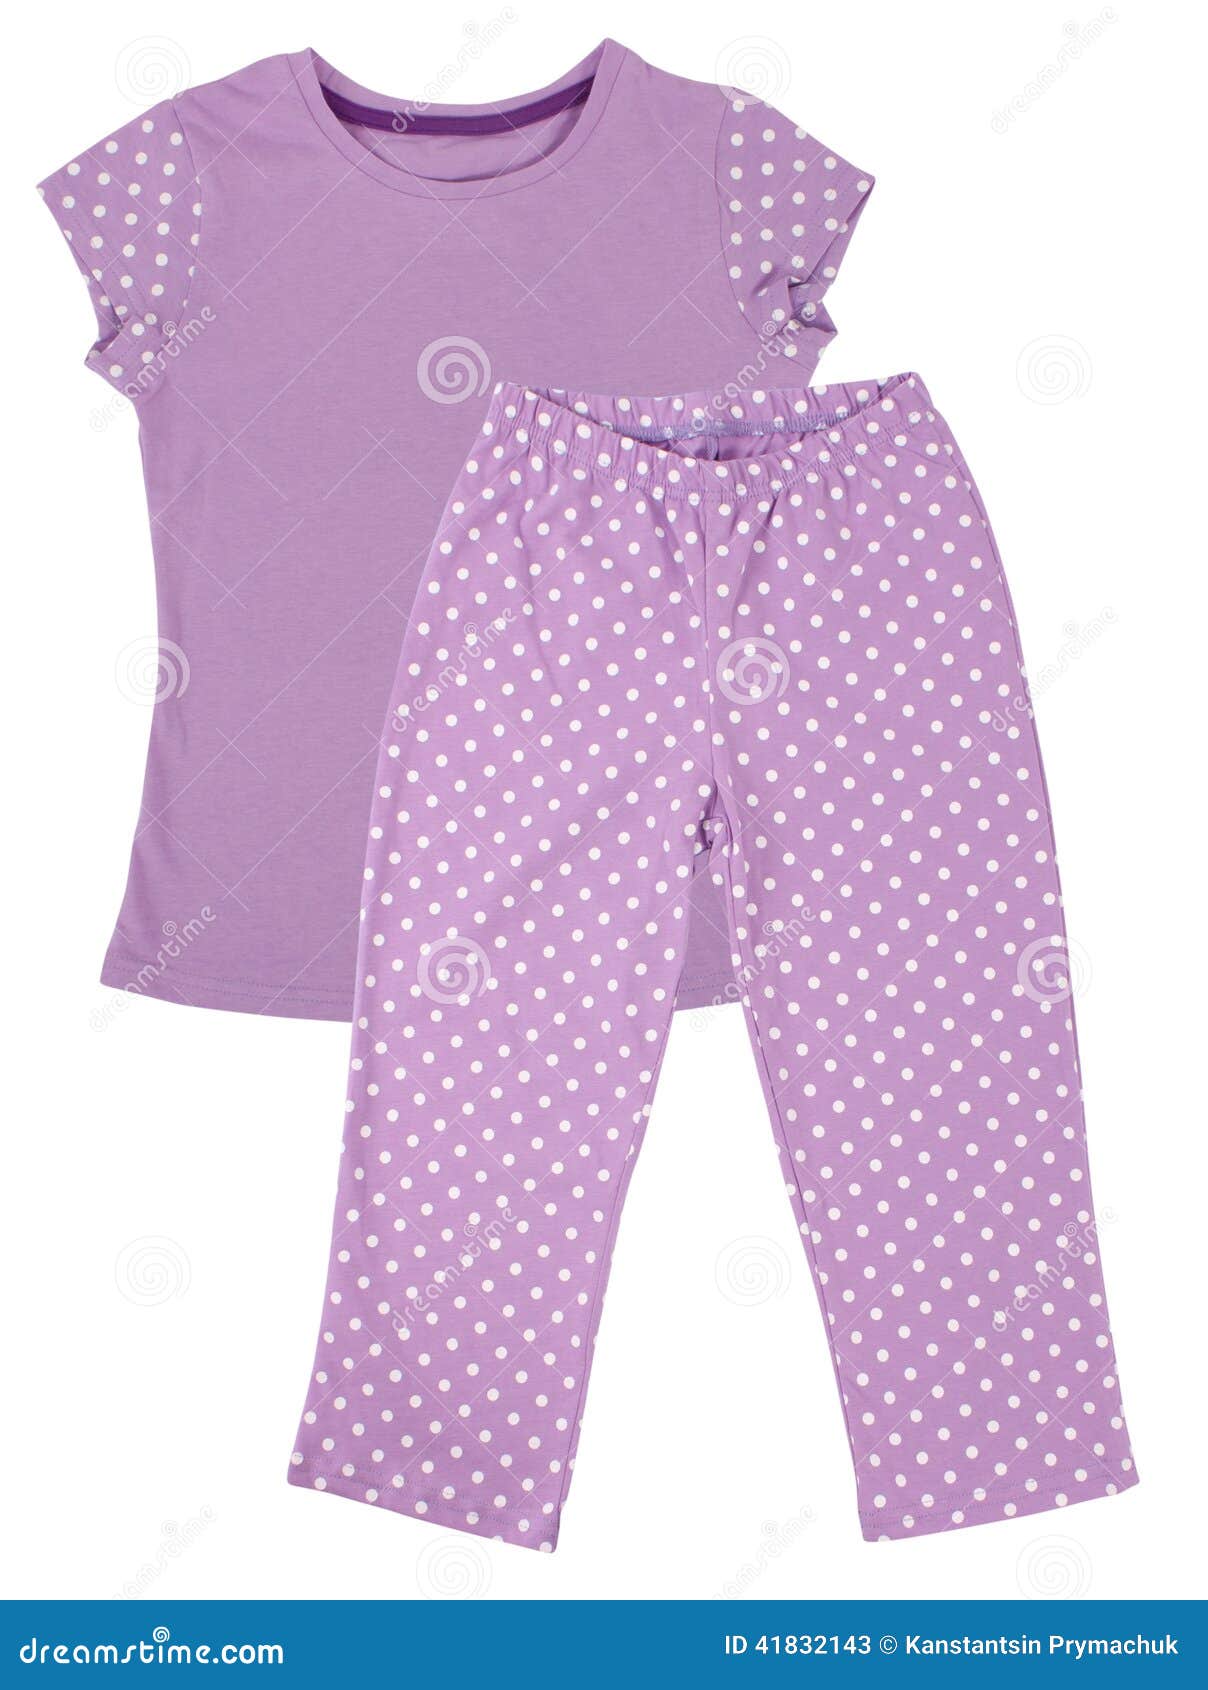 Pink Childrens Girls Pajama Set Isolated On White Stock Image - Image ...